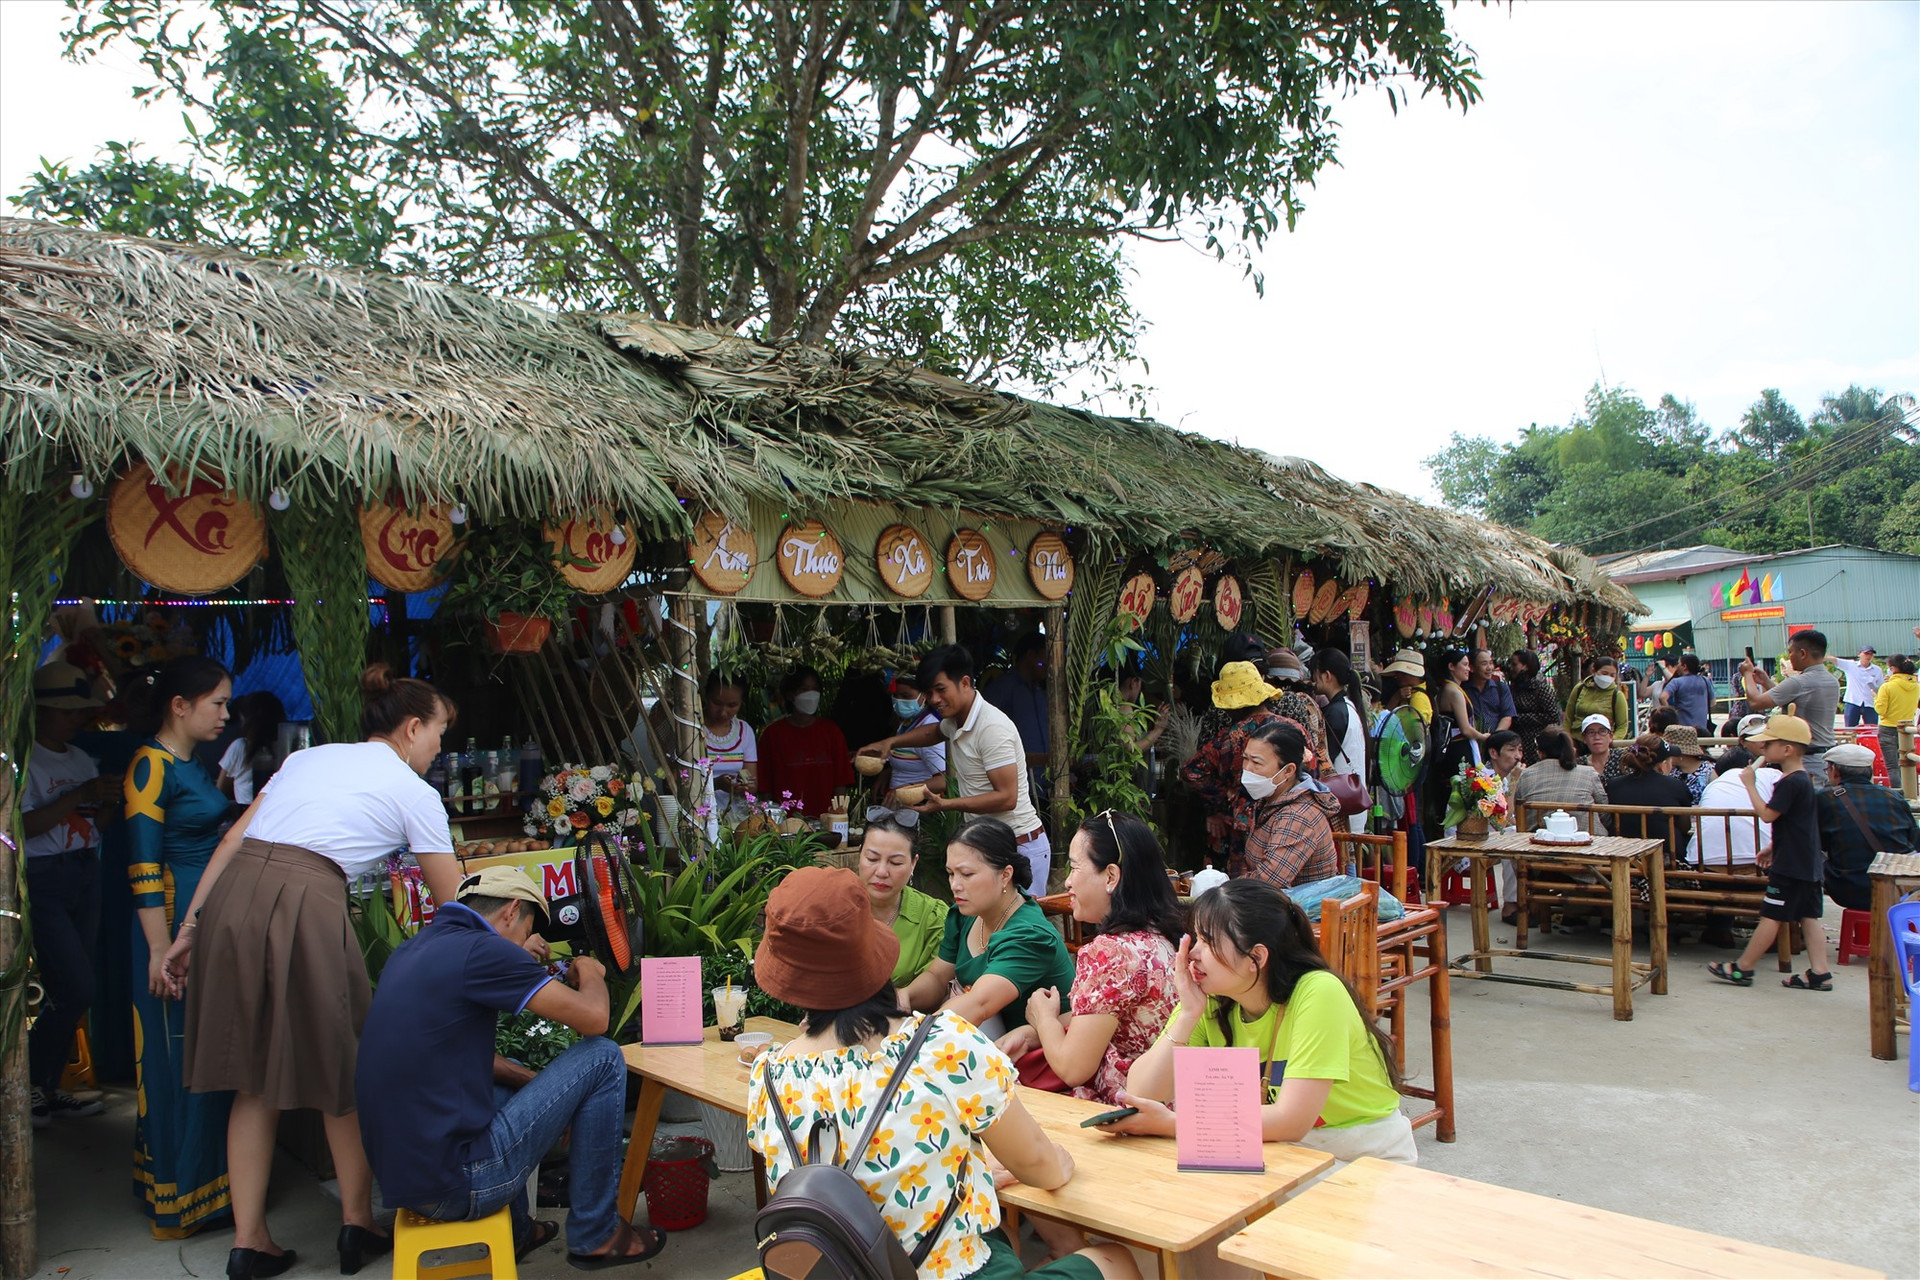 Đông đảo du khách tham gia trải nghiệm và thưởng thức ẩm thực tại đường đi bộ ở khu vực kè sông Trường (thị trấn Trà My). Ảnh: D.H